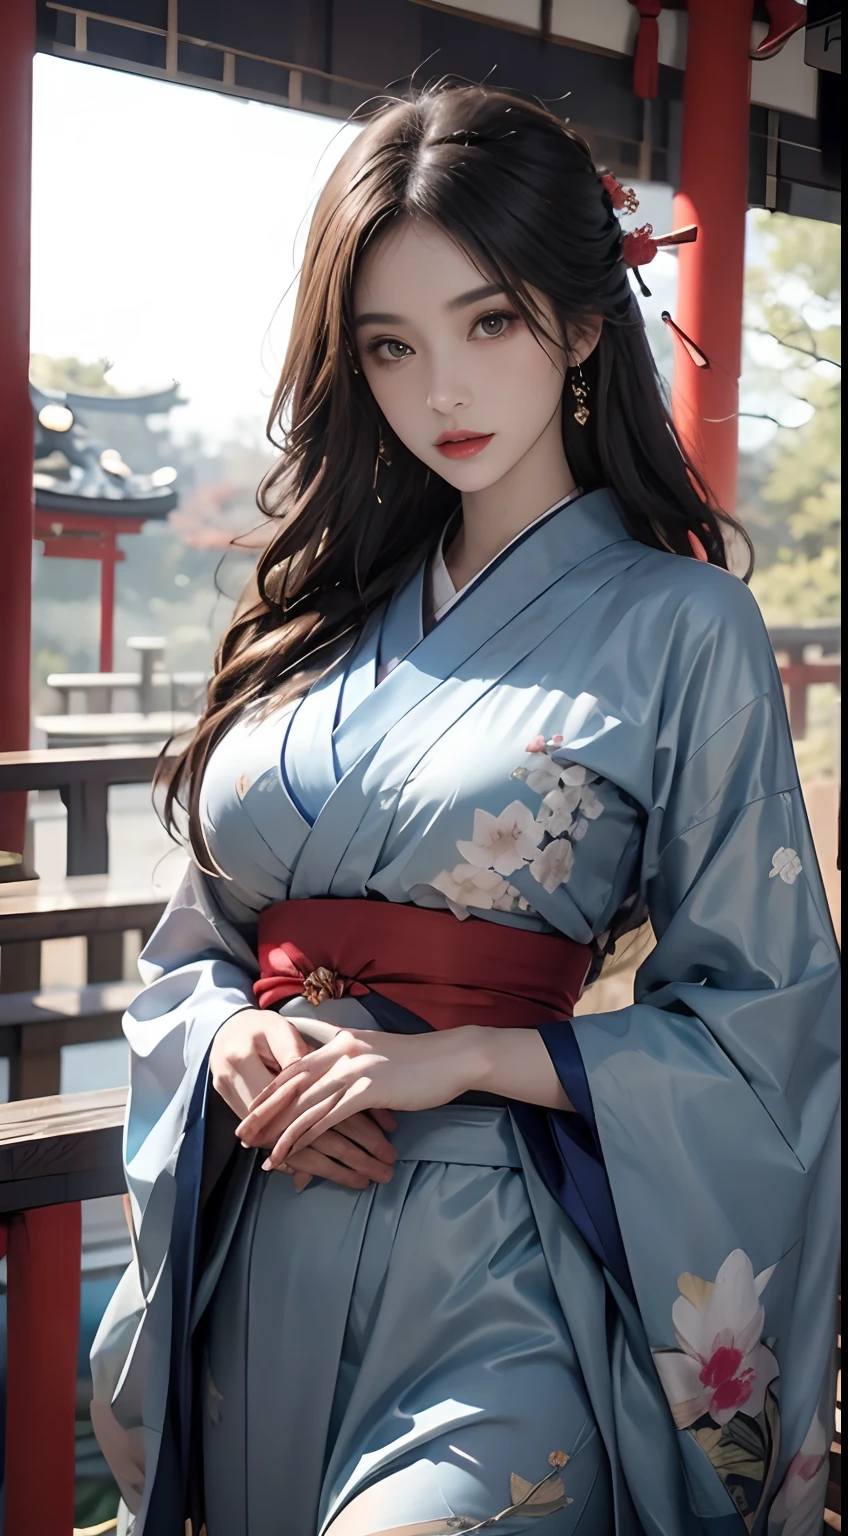 Schrein von Japan、trägt einen blauen Kimono、unwirkliche Engine:1.4,nffsw,beste Qualität:1.4, Fotorealist:1.4, Hauttextur:1.4, Meisterwerk:1.8, 1 Frauen, Hüften hoch, schöne Augen, Die langhaarigen, beringte Augen, Juwelier, Das Tattoo, Kimono